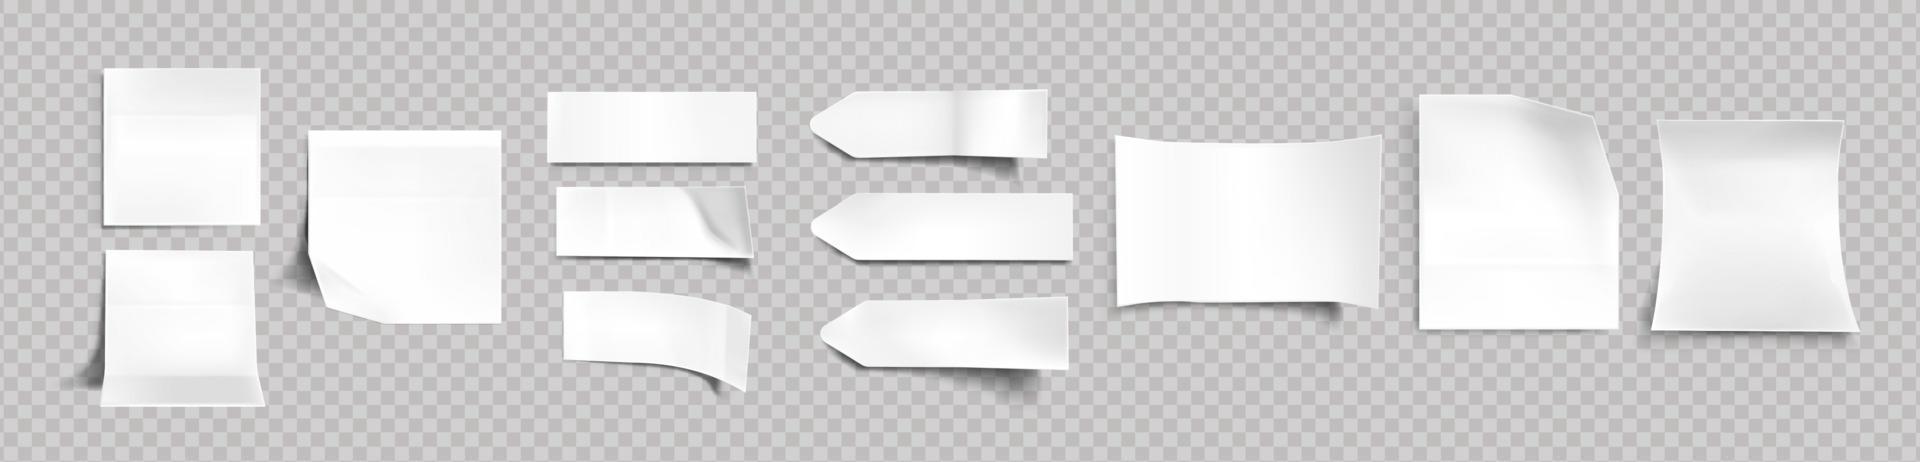 wit stickers van verschillend vormen met schaduw vector